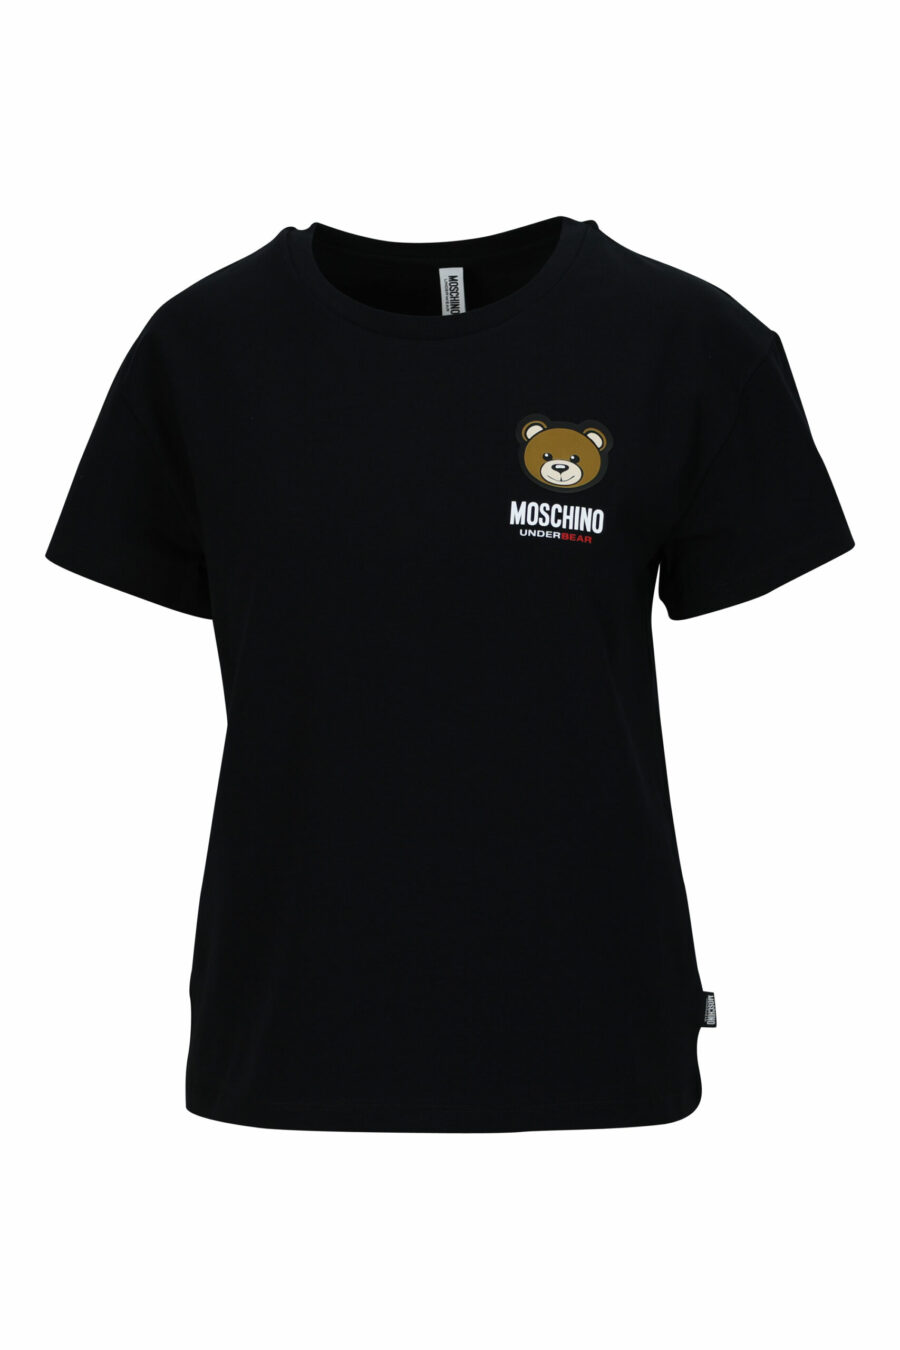 T-shirt preta de tamanho grande com o logótipo do urso "underbear" - 667113697666 scaled